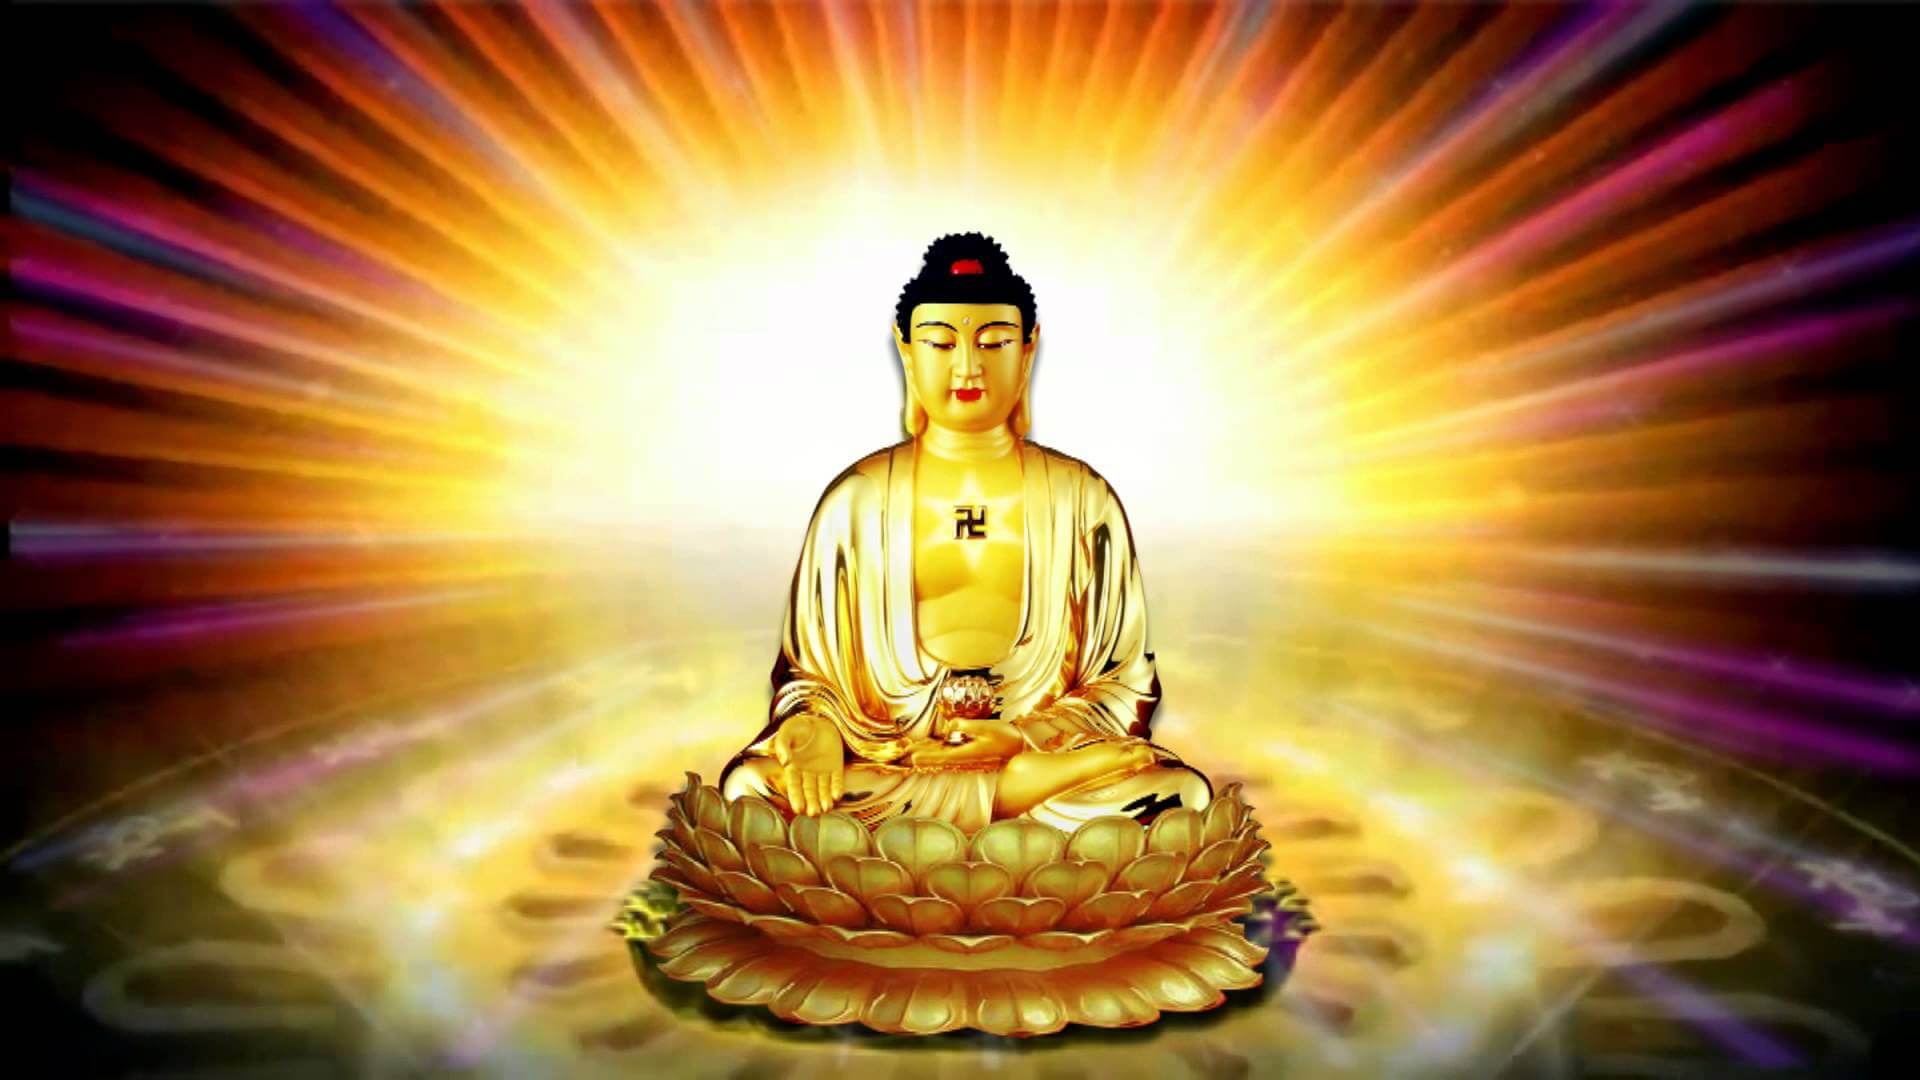 Những bức ảnh Phật A Di Đà là cách để chúng ta tiếp xúc với tinh thần thiêng liêng, tác động đến tâm hồn và mang lại sự an lạc cho cuộc sống của chúng ta. Đó cũng là cách để chúng ta tìm hiểu về văn hoá Phật giáo và nâng cao đạo đức của mình.